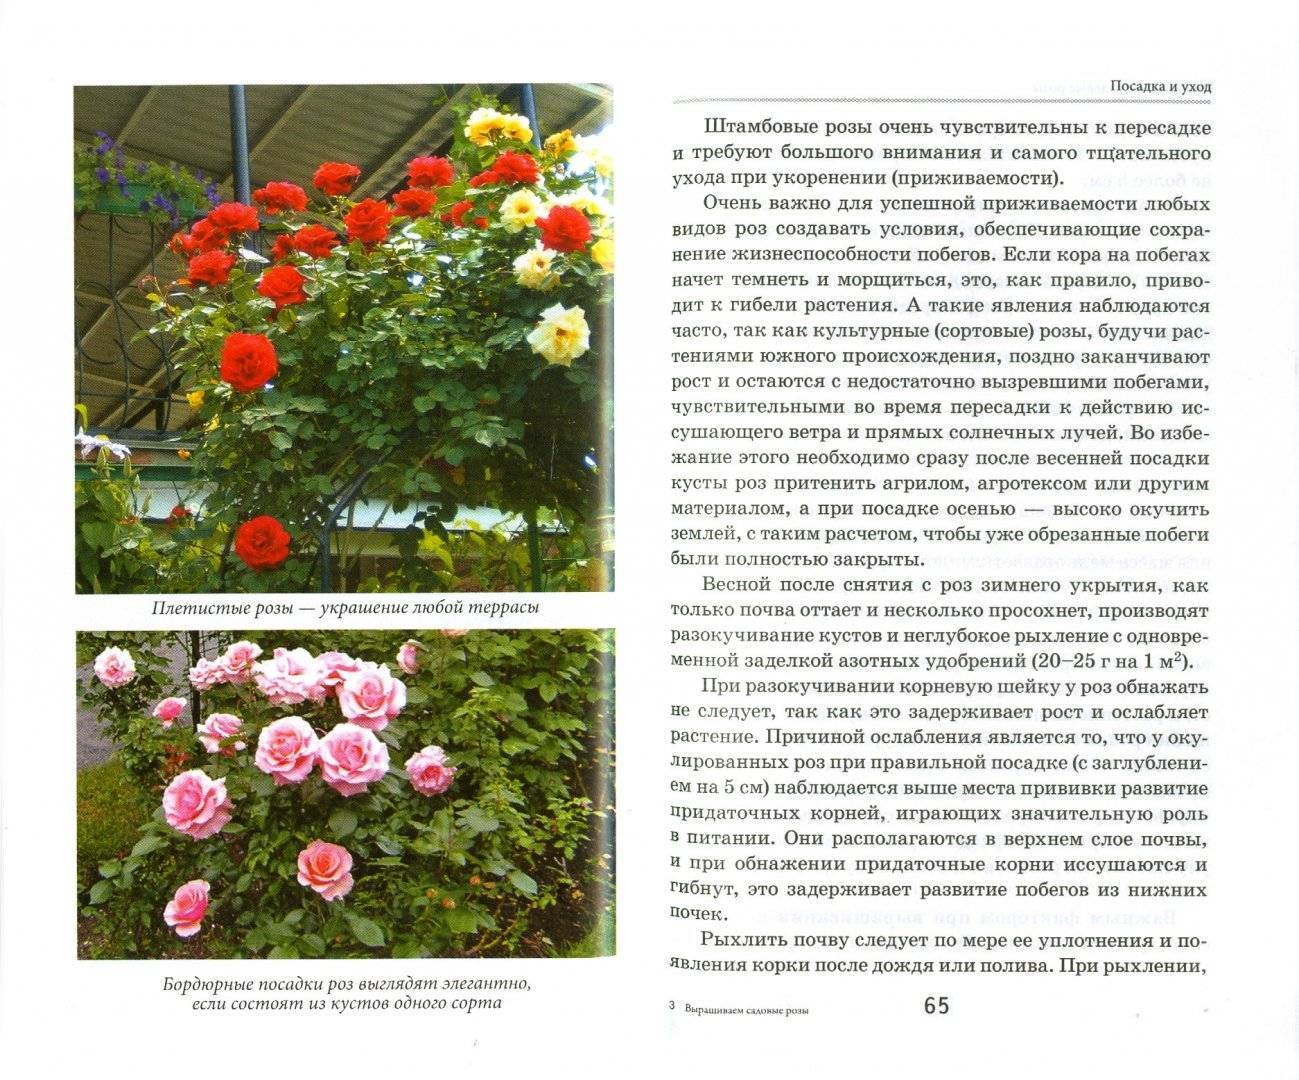 Плетистая роза laguna (голубая лагуна): фото и описание, отзывы